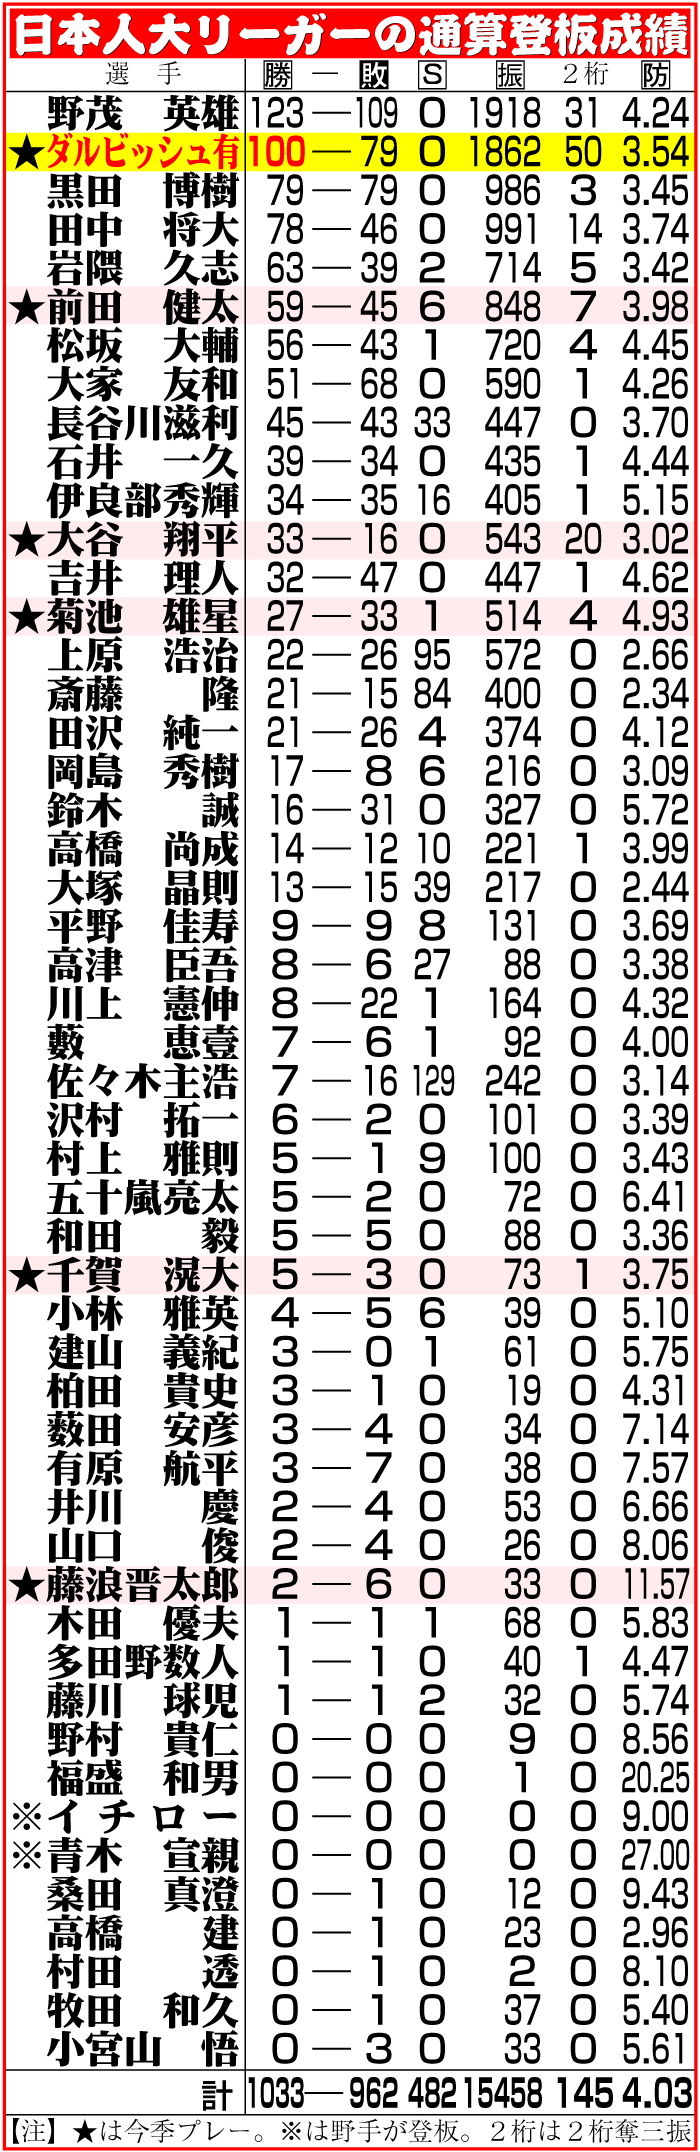 【イラスト】日本人大リーガーの通算登板成績一覧表